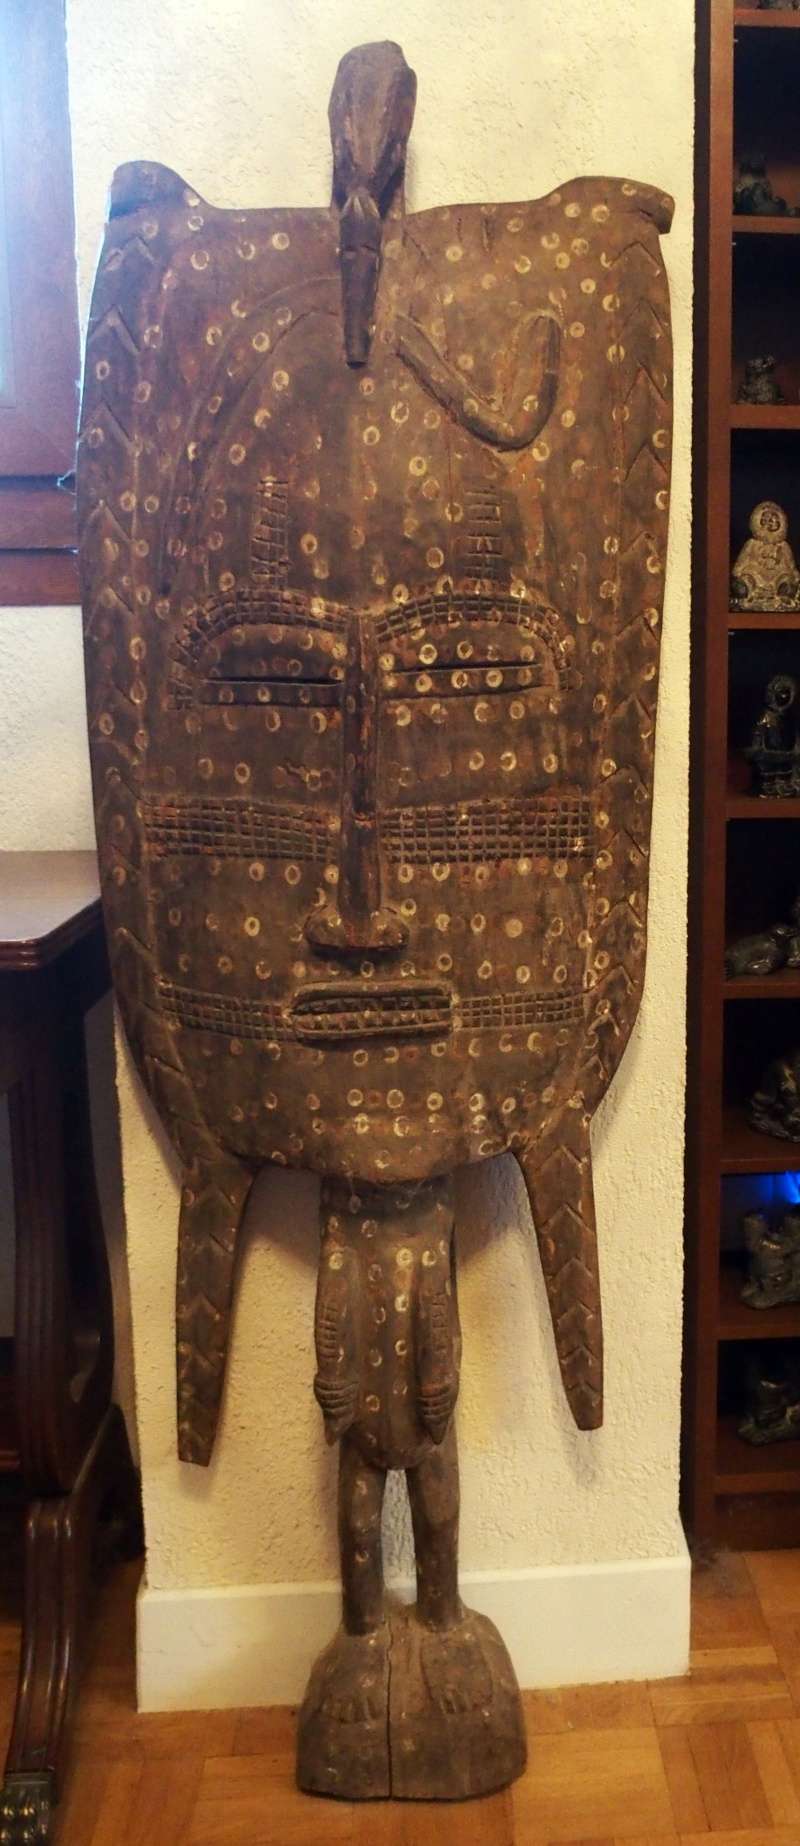 Grand masque (ou cimier) en bois semblant authentique 00117